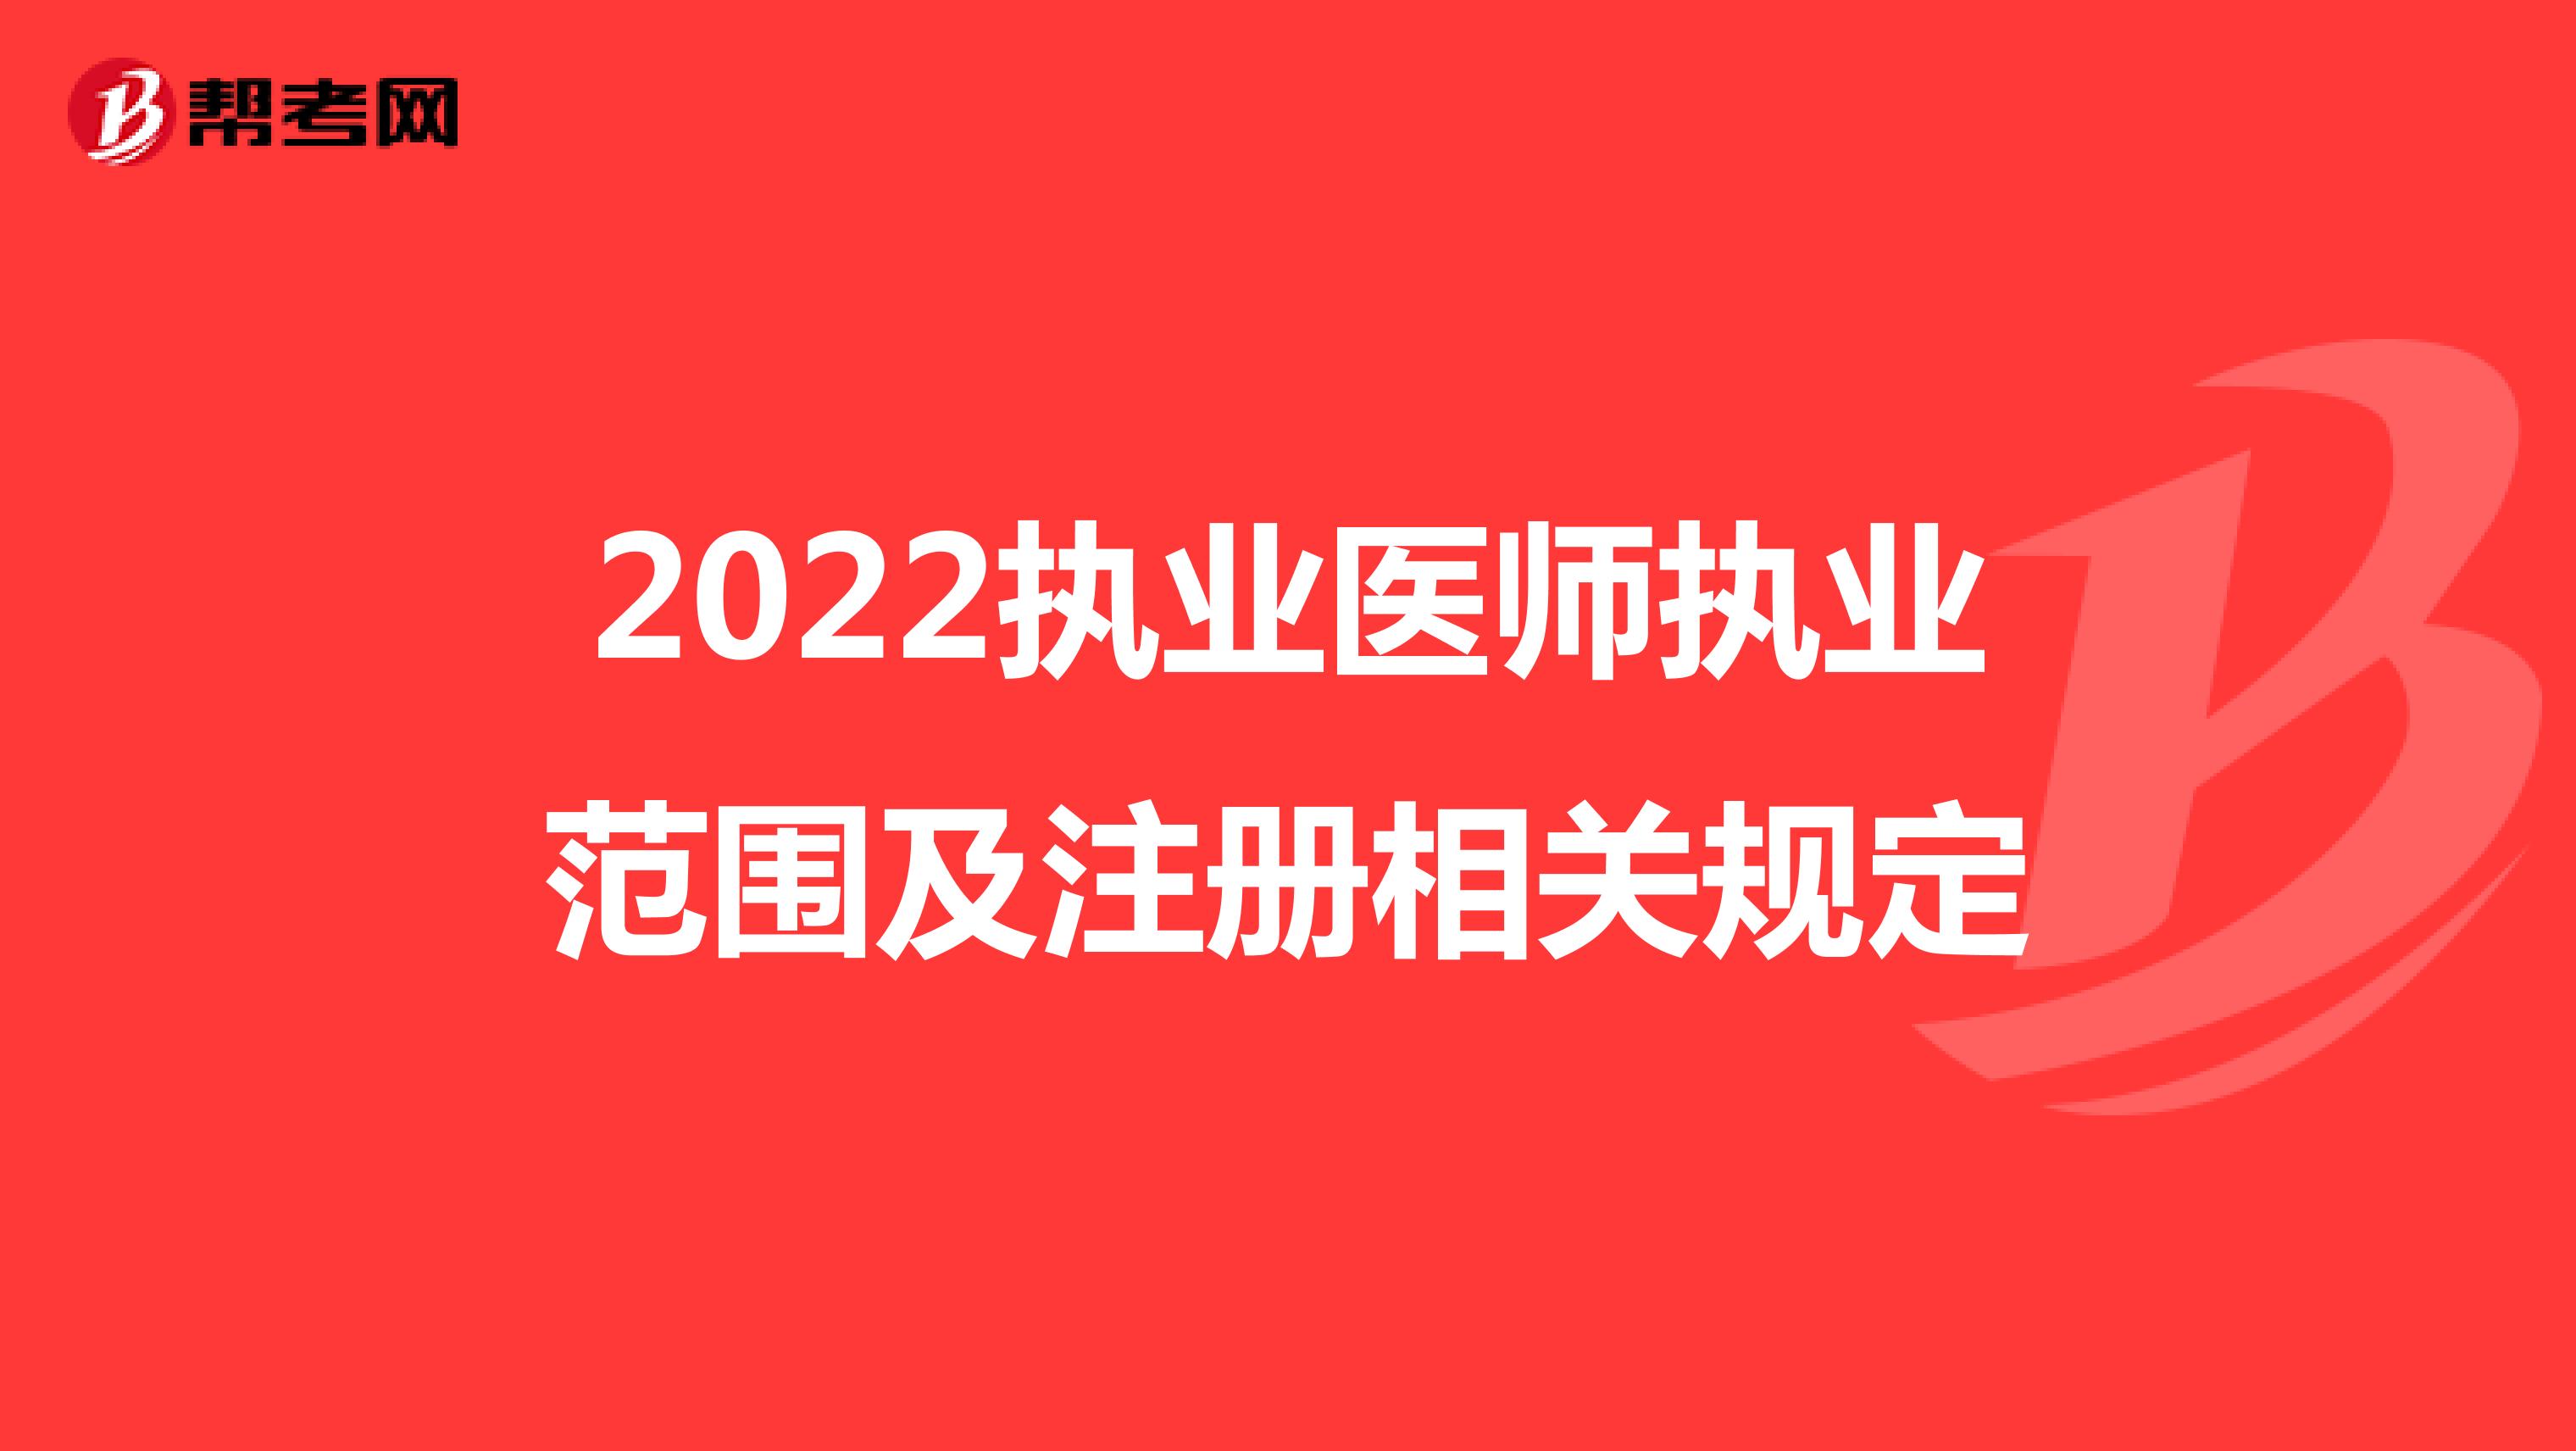 2022执业医师执业范围及注册相关规定